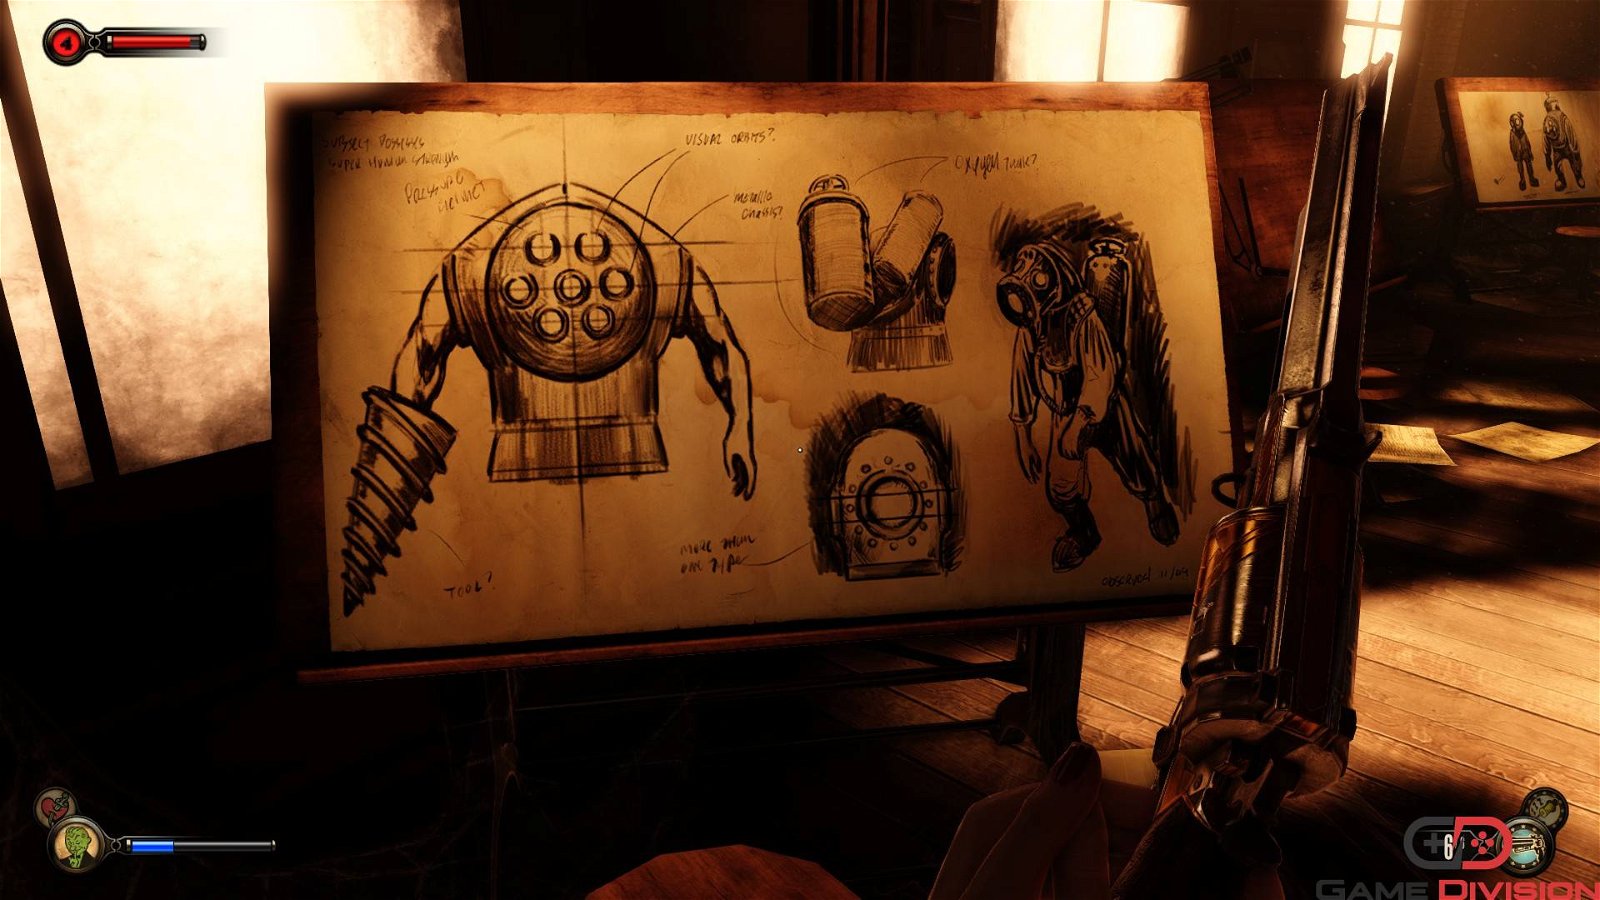 Immagine di BioShock 4, lo sviluppo resta alle fasi embrionali: il team cerca un Senior Game Designer